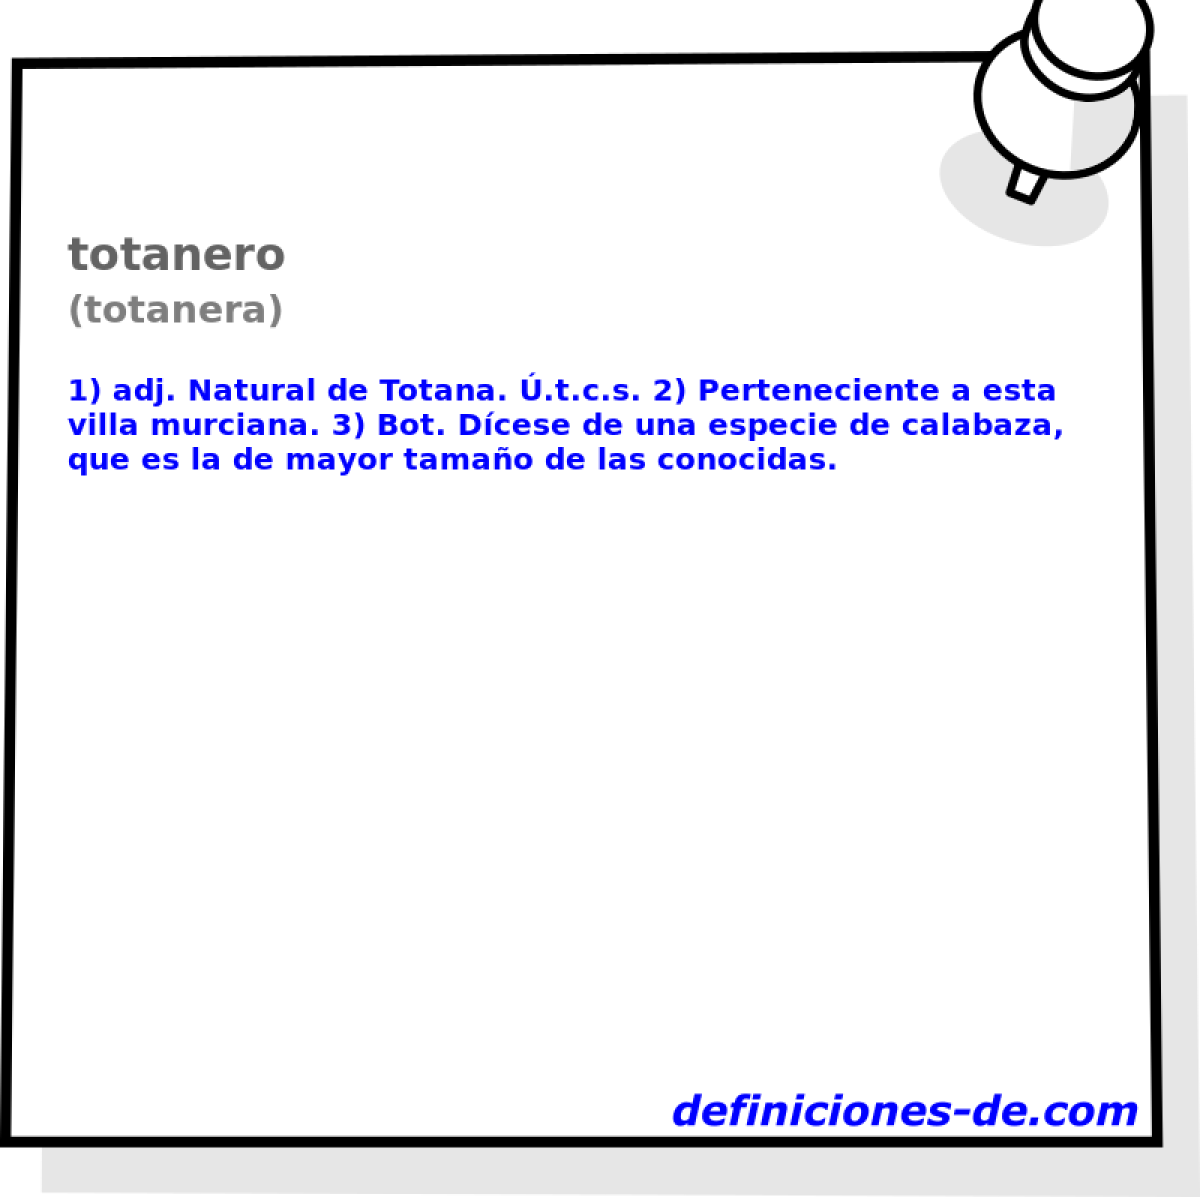 totanero (totanera)